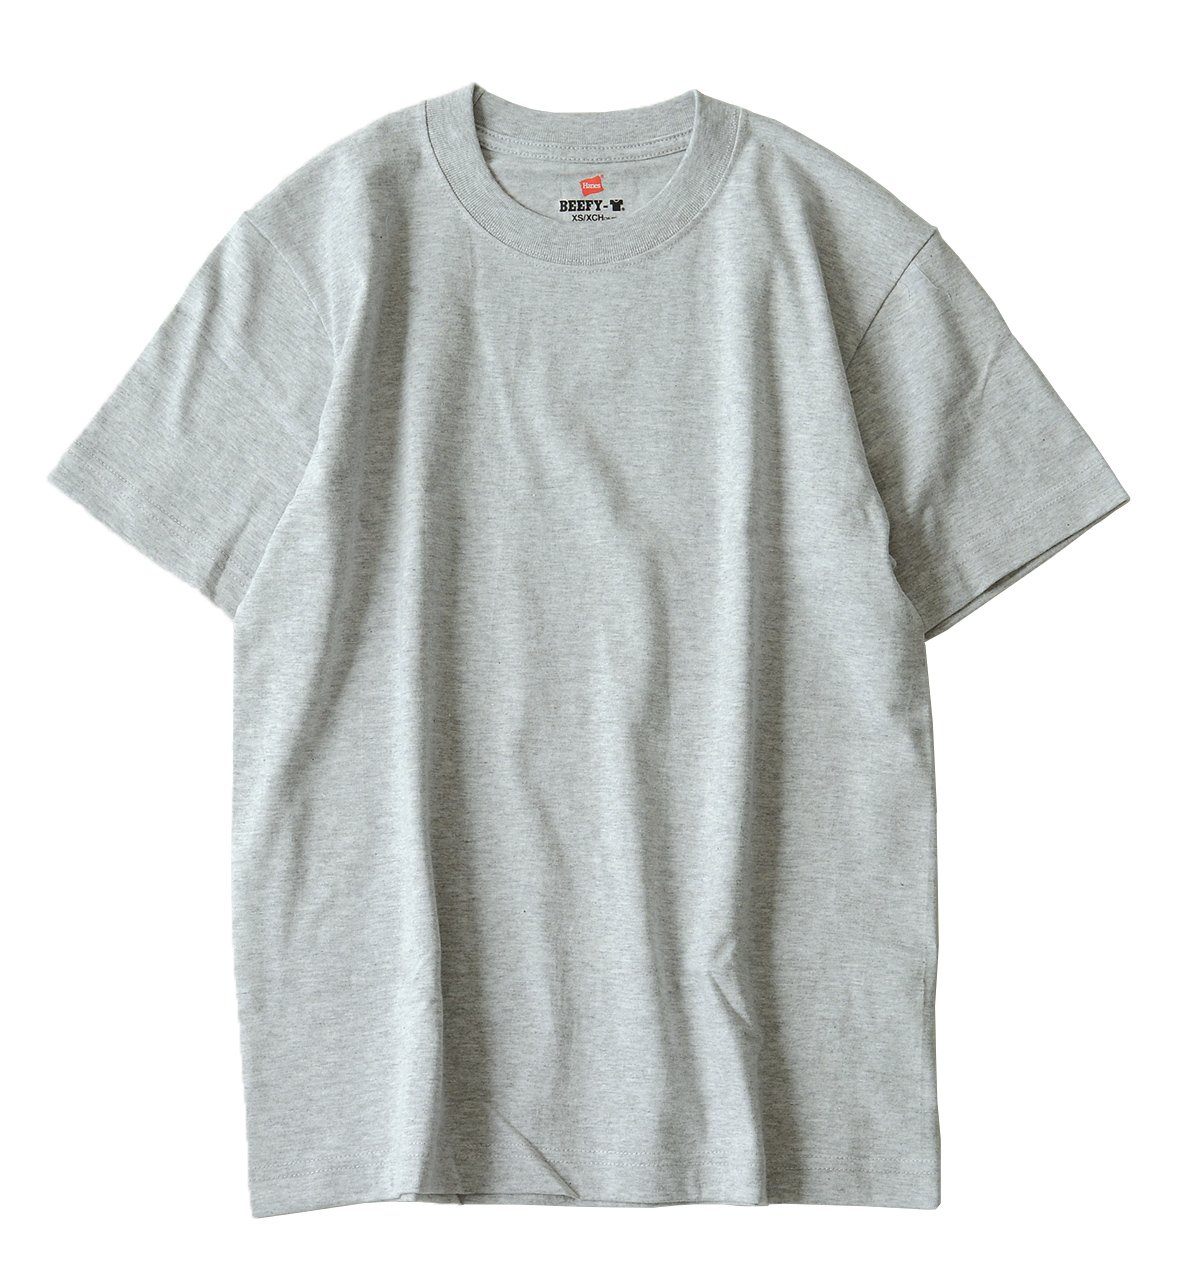 ヘインズ Tシャツ 半袖 丸首 2枚組 綿100% 丸胴仕様 タグレス仕様 ビーフィTシャツ2P ビーフィー H5180-2 メンズ ヘザーグレー S